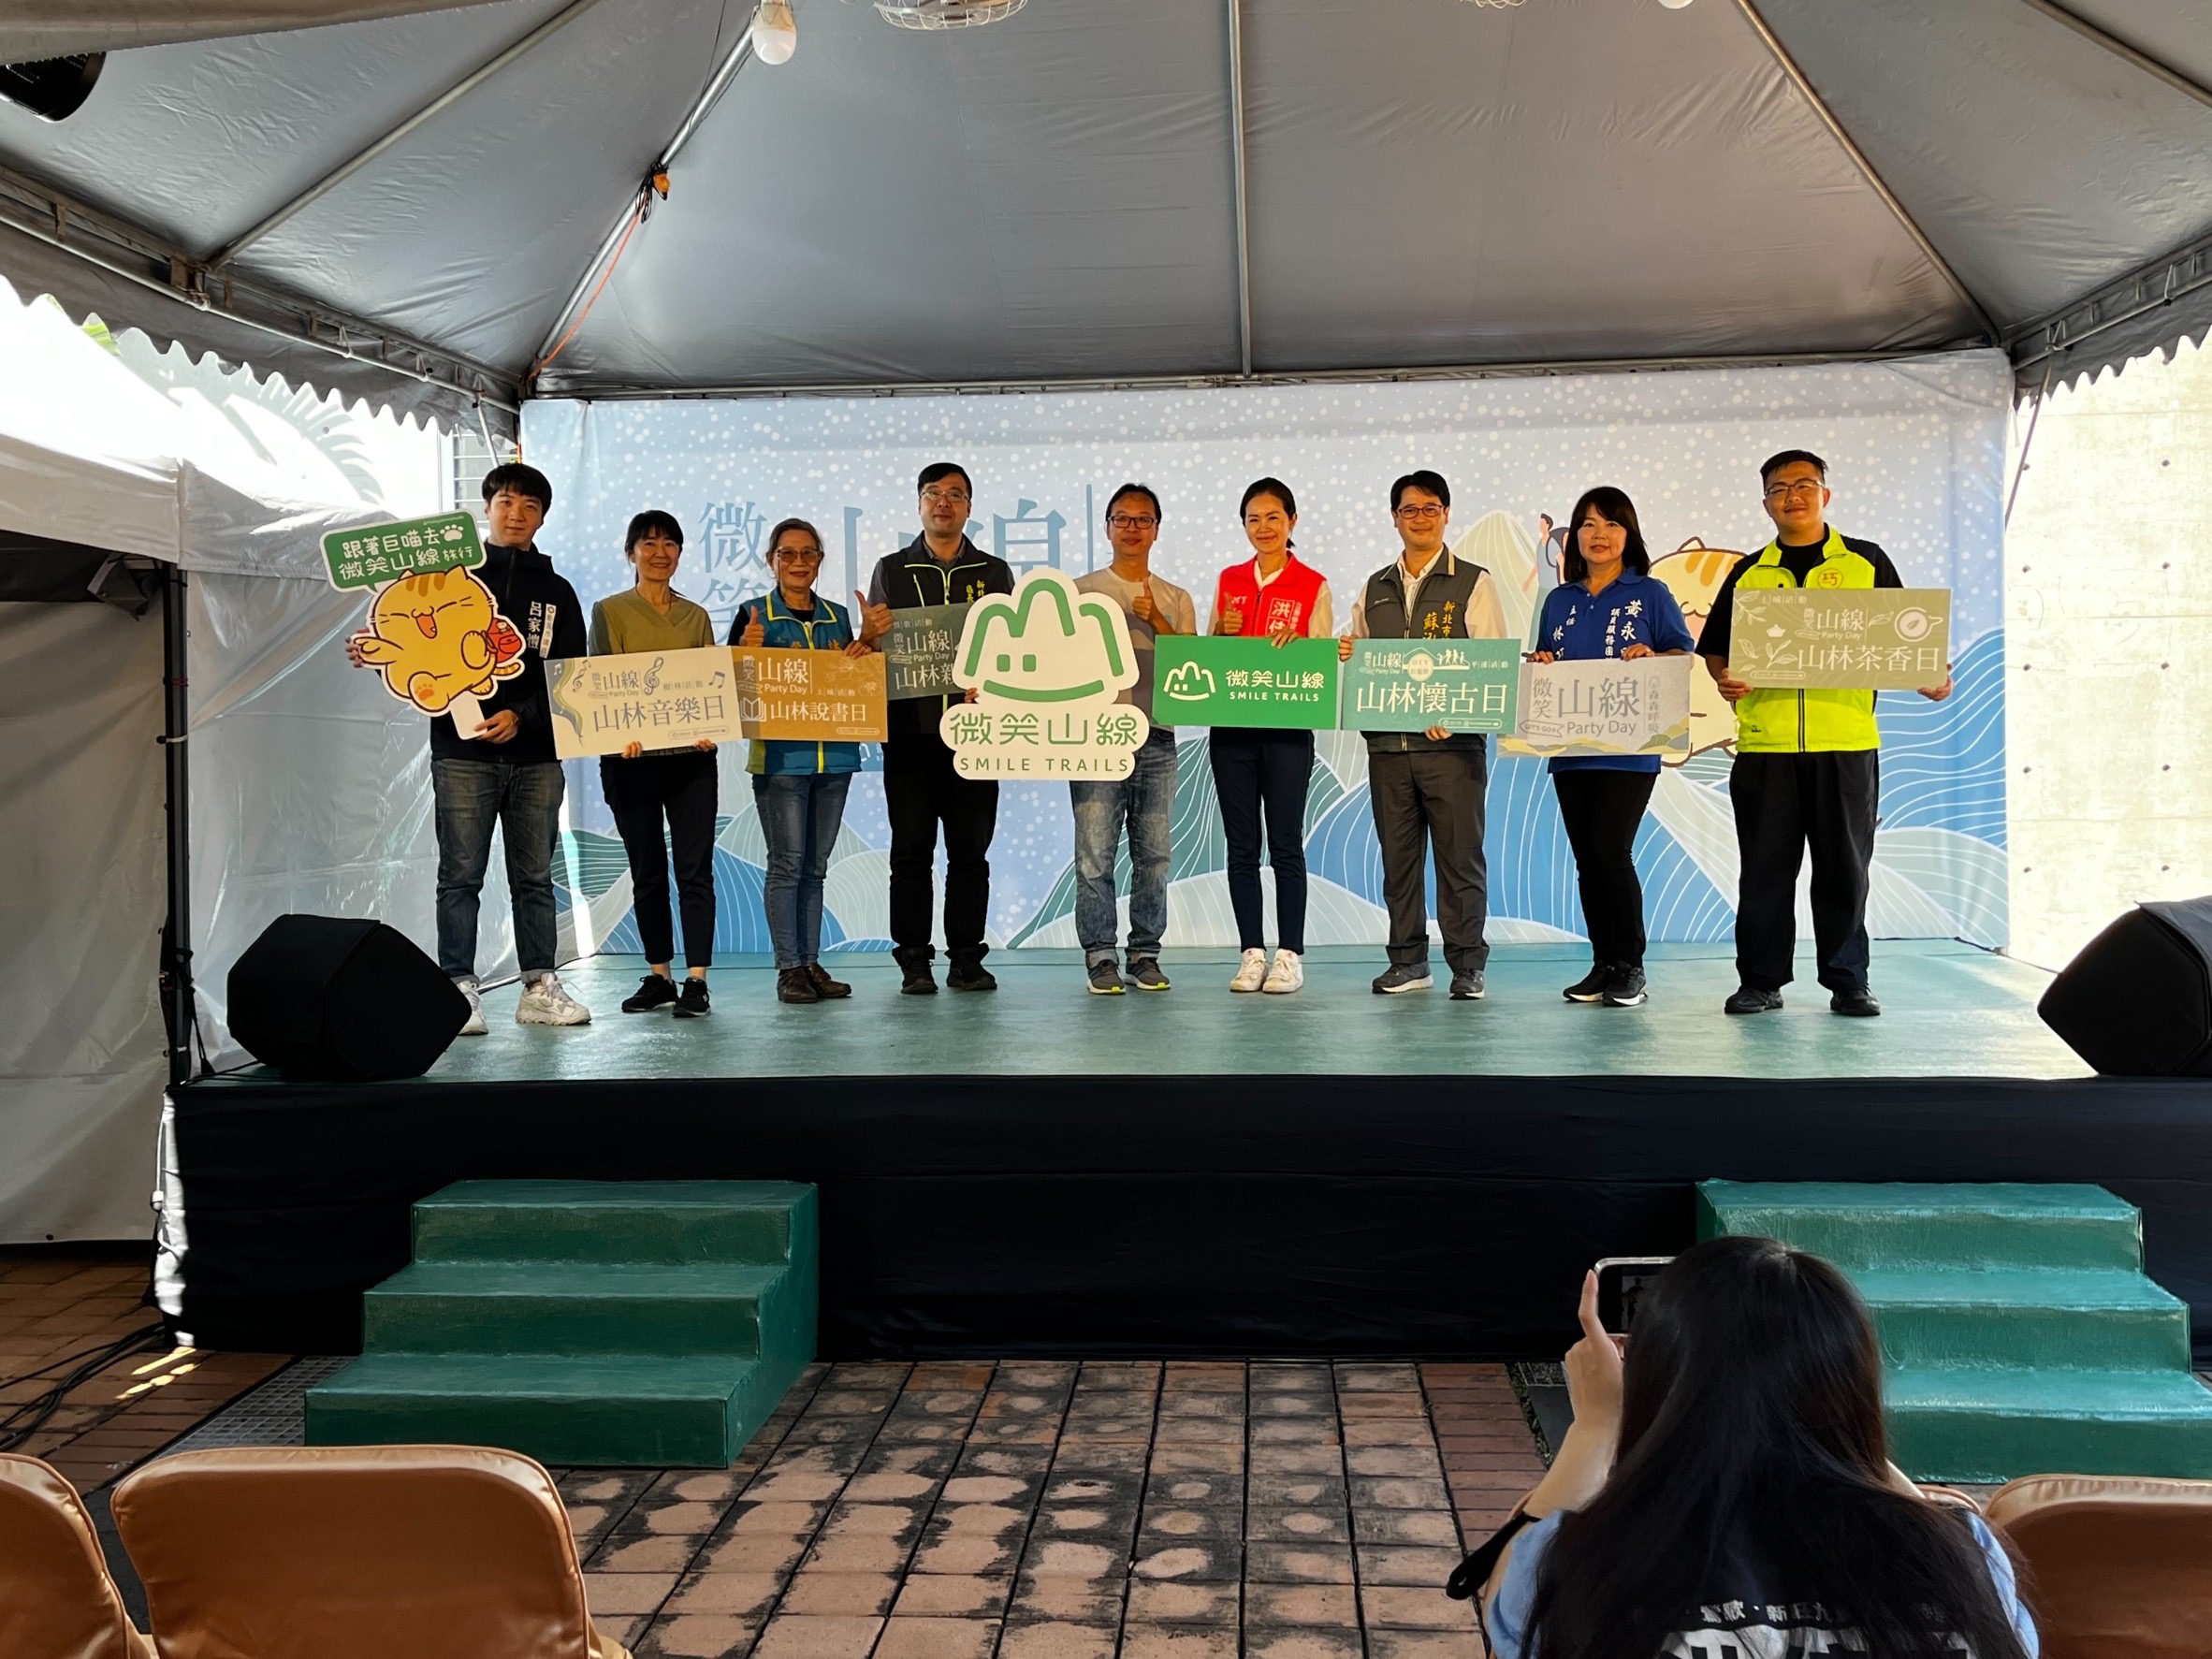 森林體驗樂趣 新北「微笑山線Party Day」吸引親子闔家參與 - 早安台灣新聞 | Morning Taiwan News